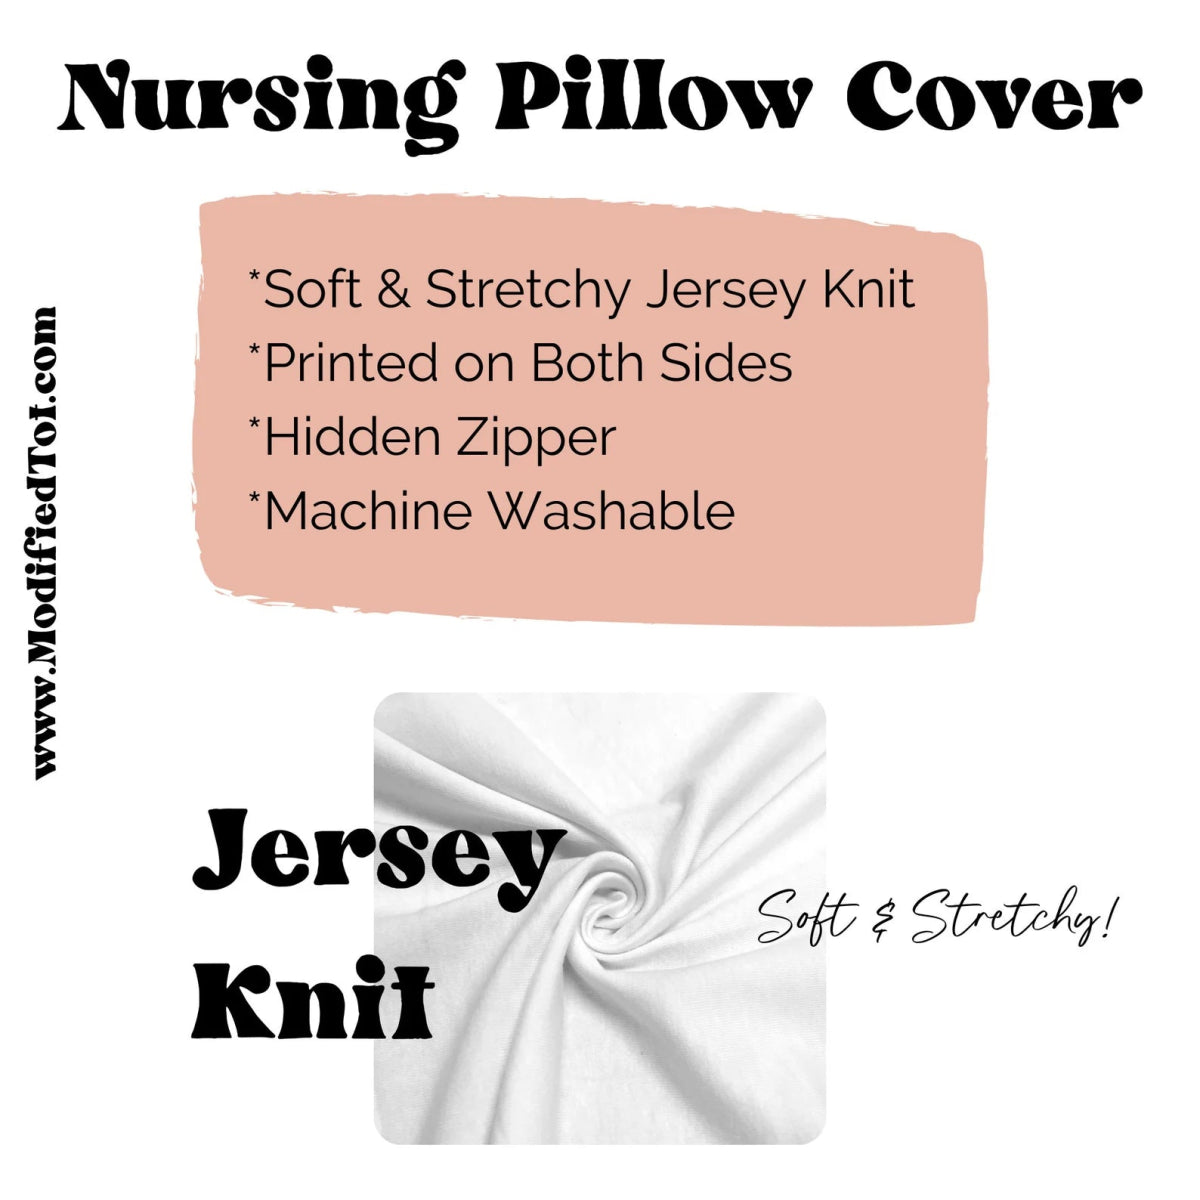 Desert Rose Nursing Pillow Cover - Desert Rose, gender_girl, Theme_Boho